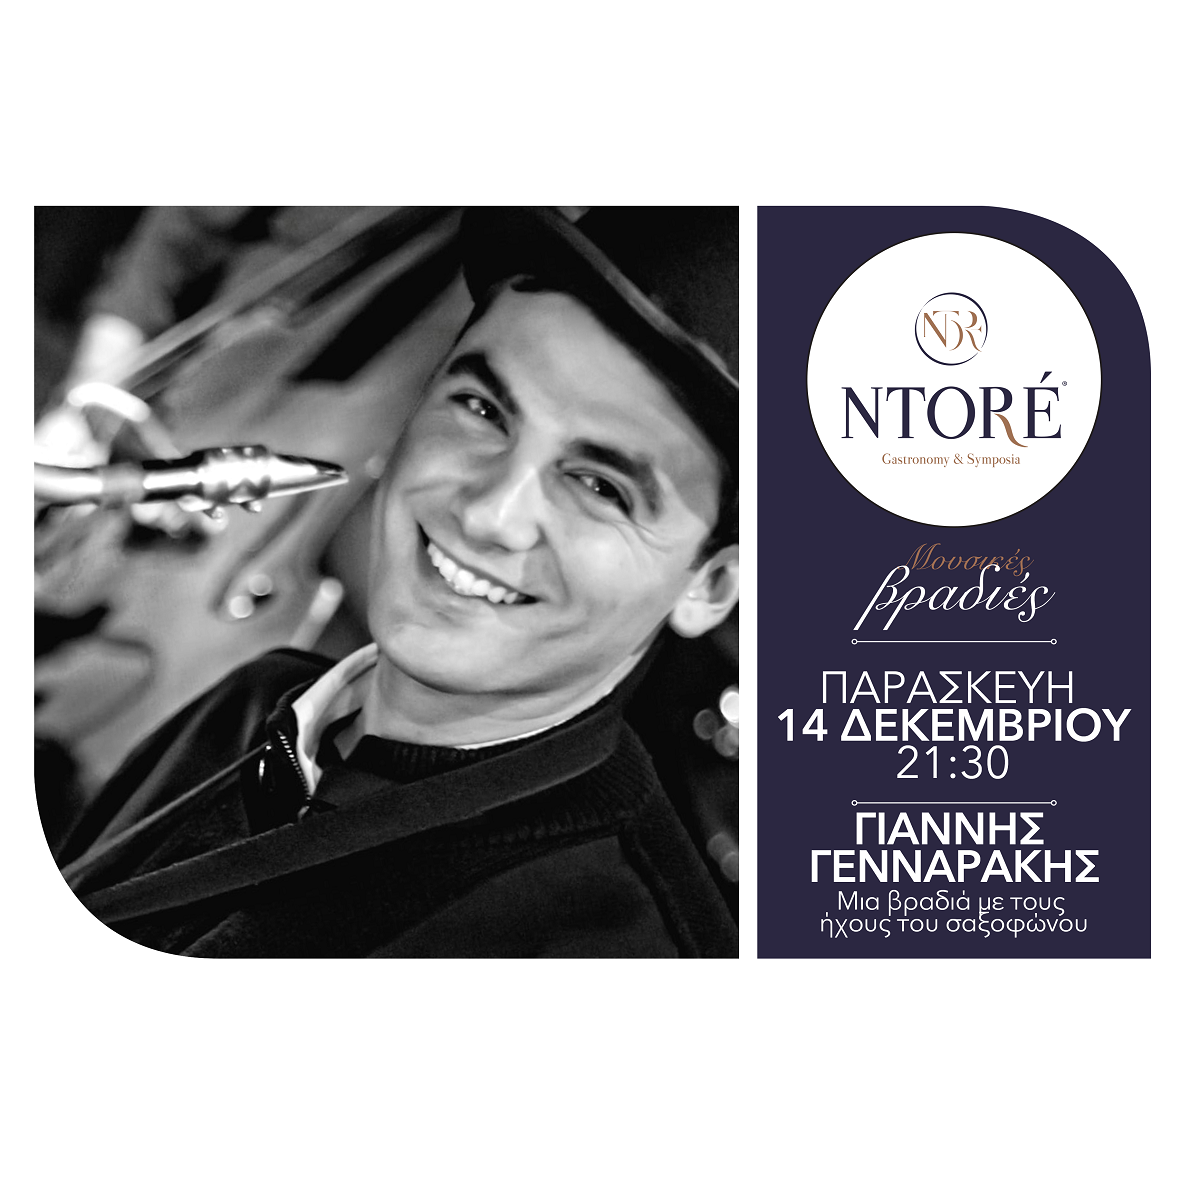 Ο Γιάννης Γενναράκης στο Ntoré,  Παρασκευή 14 Δεκεμβρίου 2018